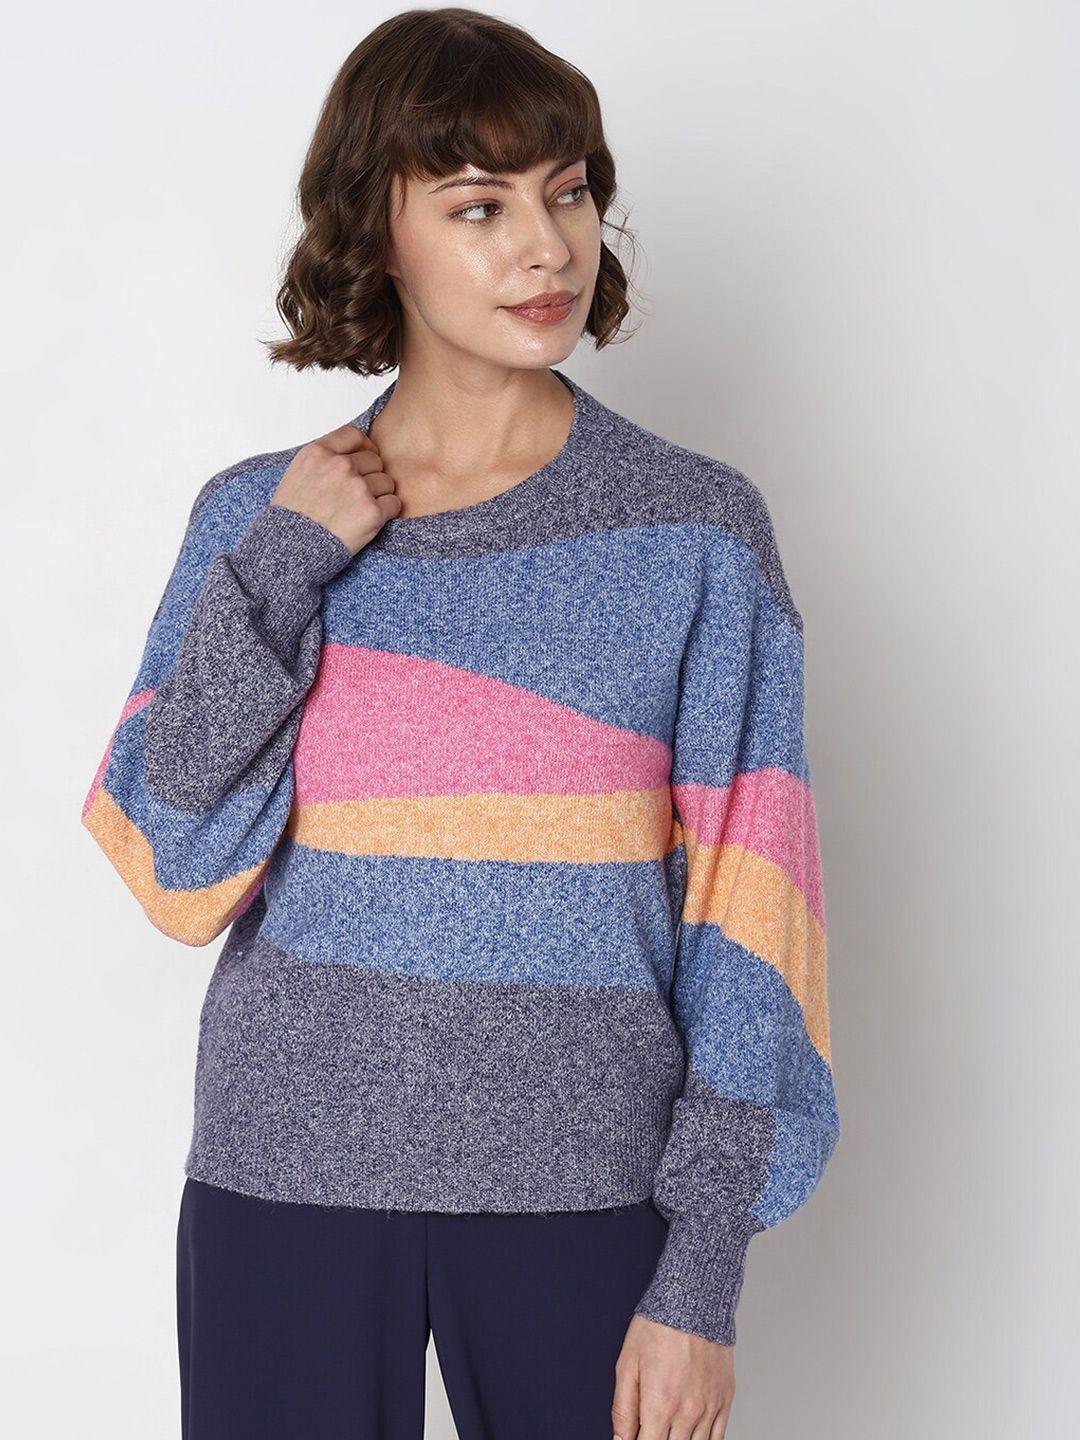 vero moda colourblocked pullover sweaters